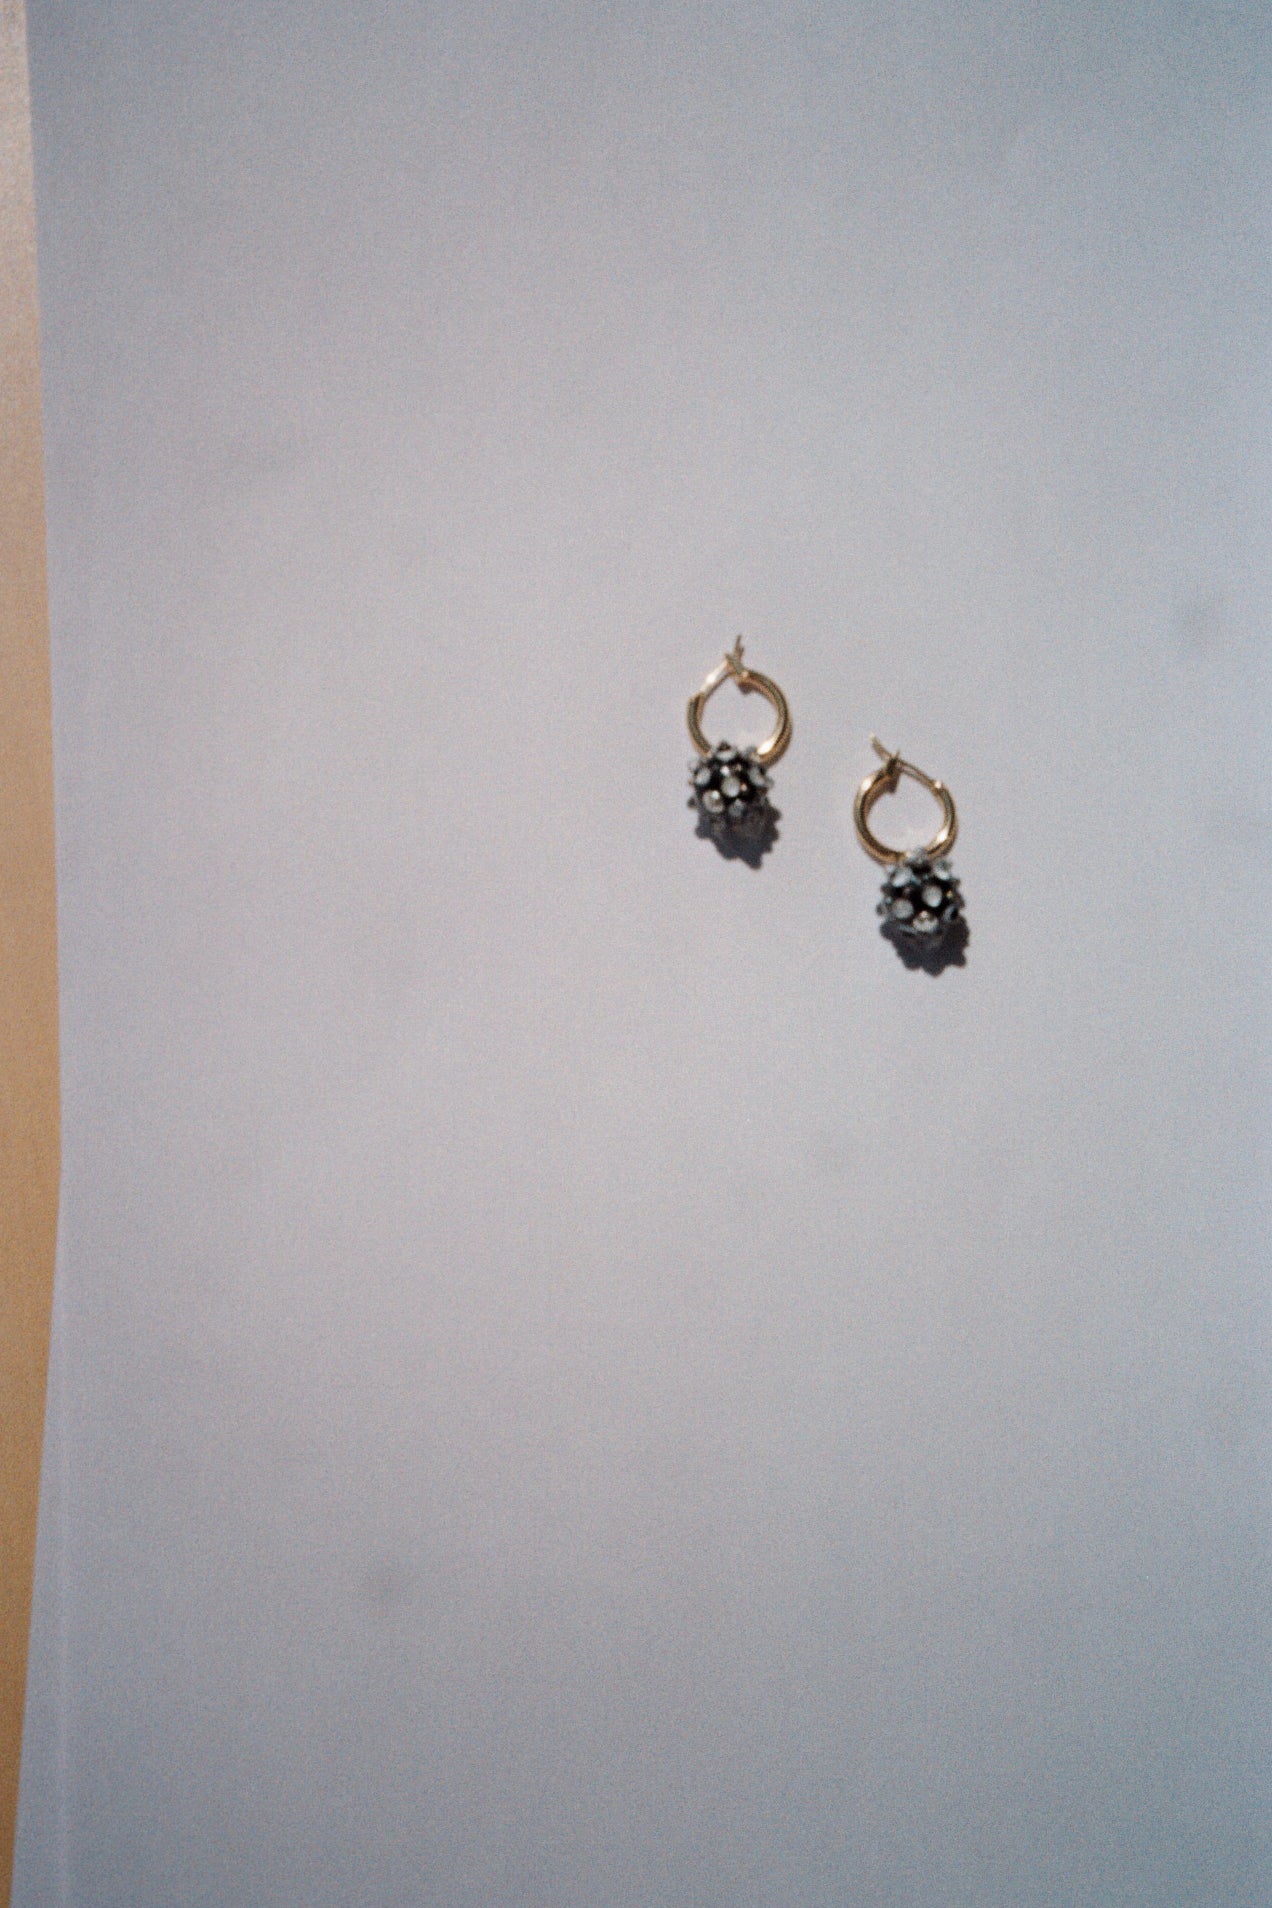 Division earrings - Black / white